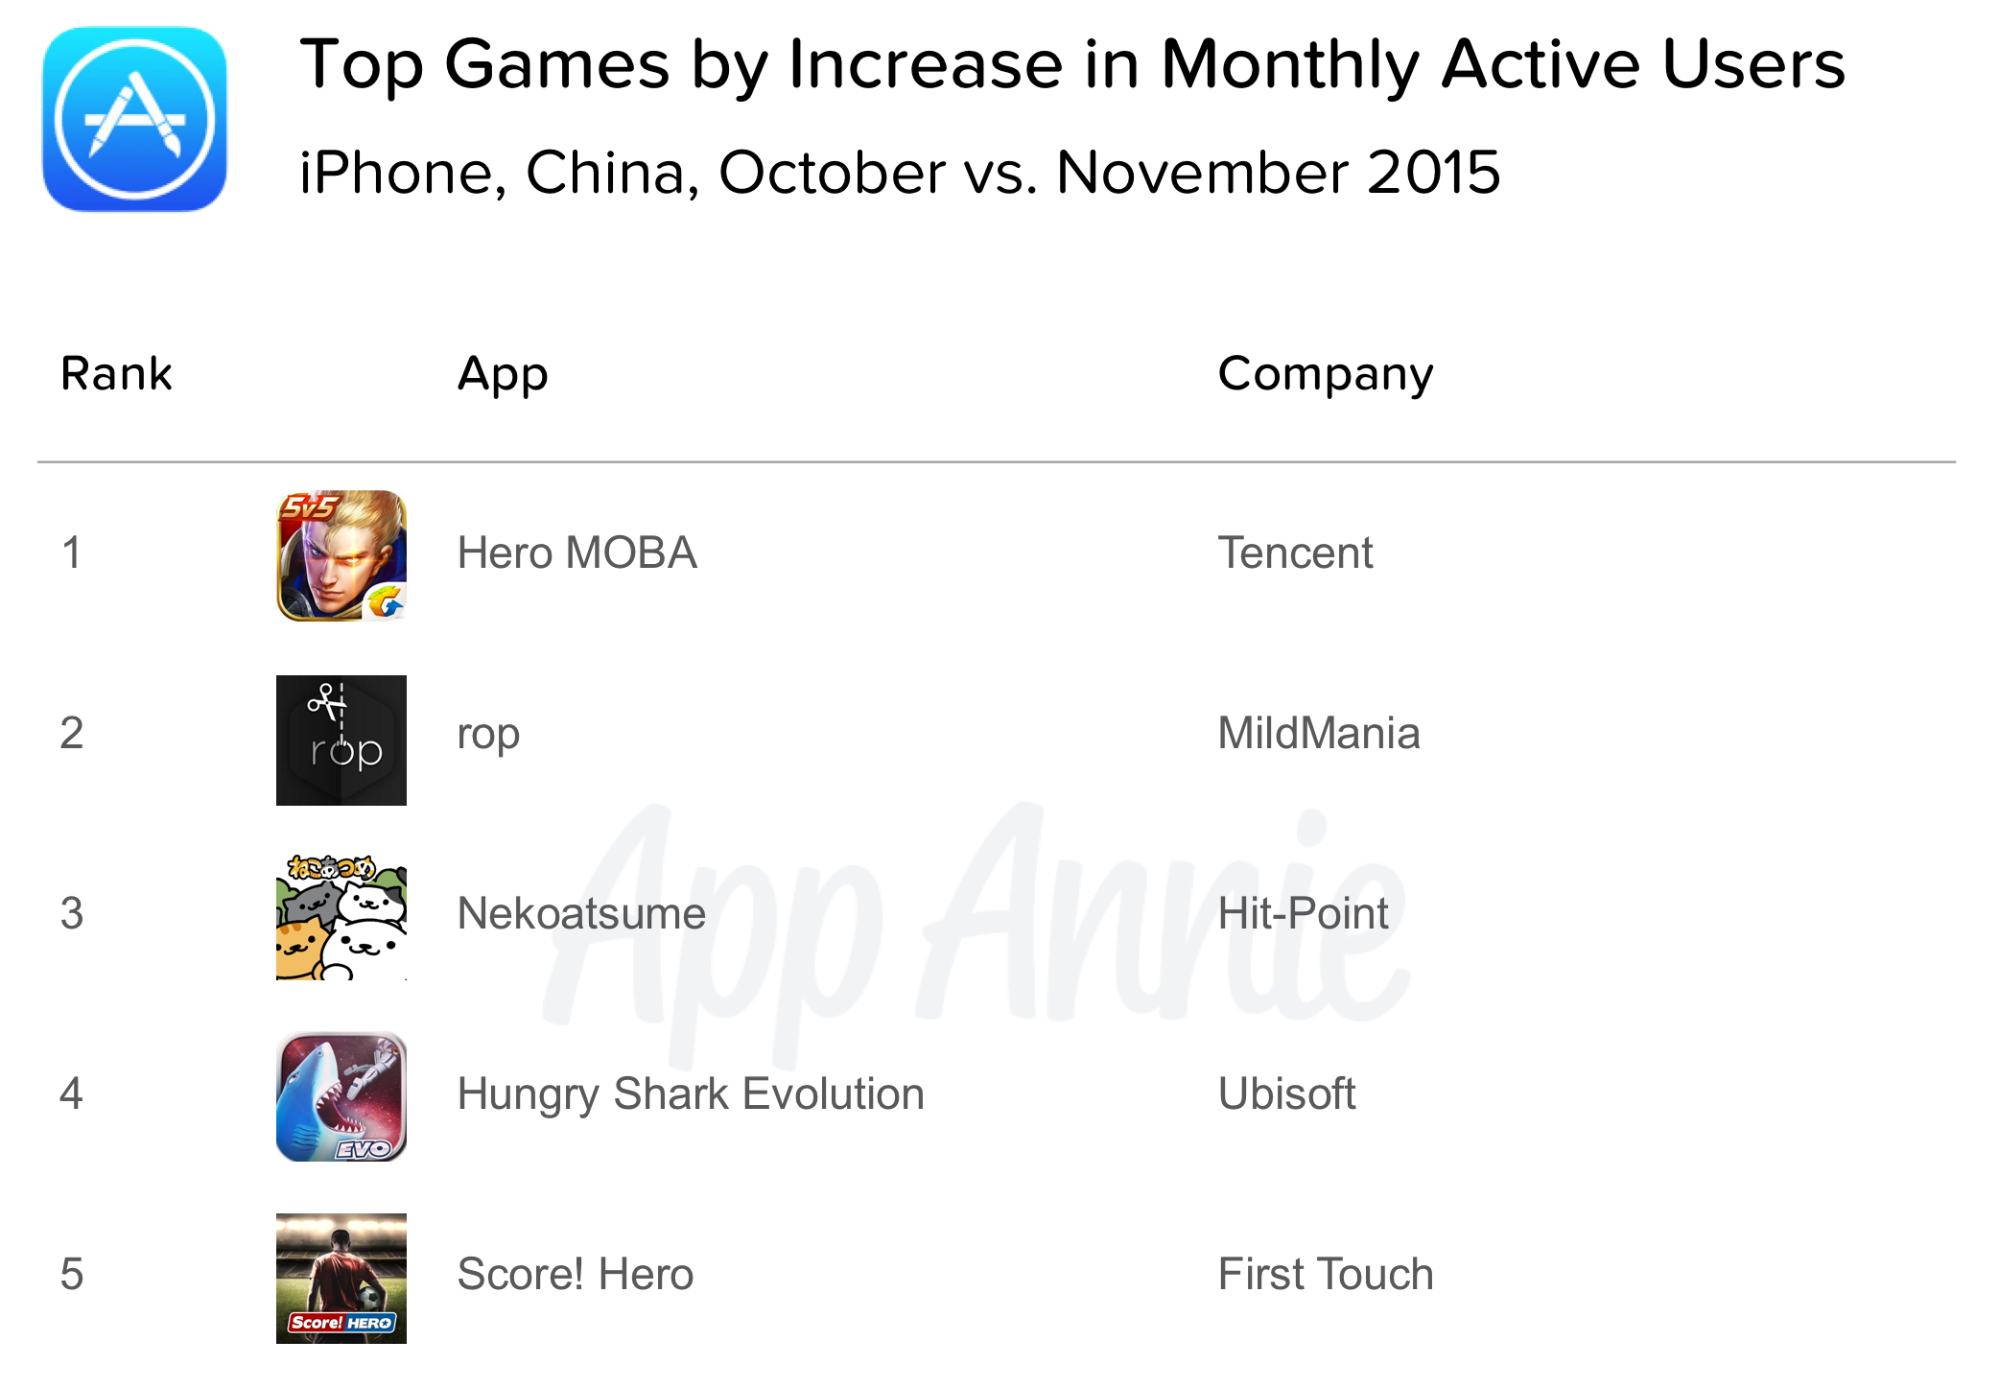 Top Games Increase MAU iPhone China October 2015 vs November 2015